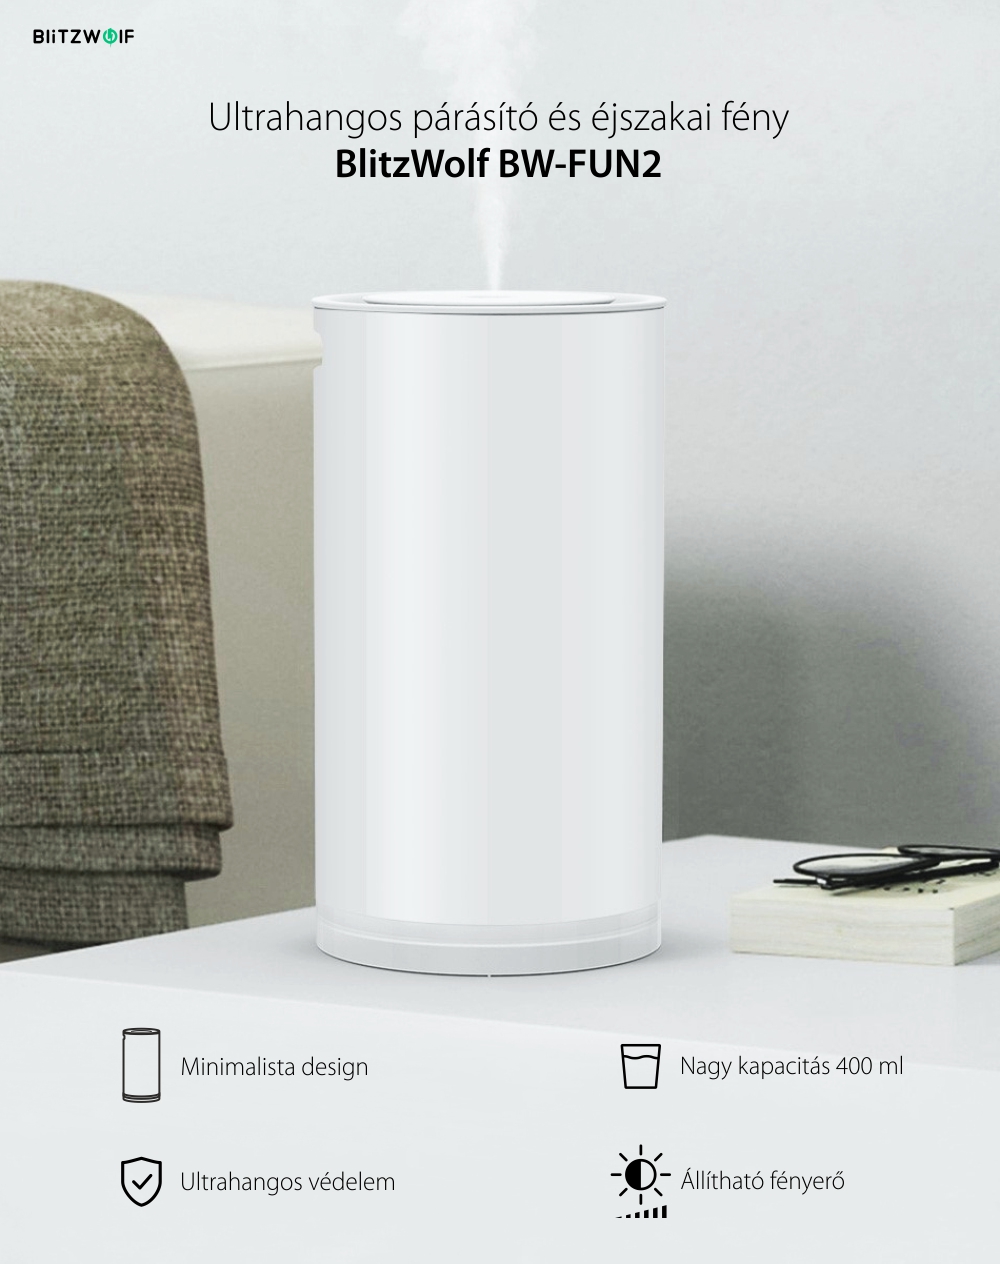 Ultrahangos Párásító BlitzWolf BW-FUN2 és Készenléti lámpa, Fehér, Kapacitás 400 ml, Állítható fényerő